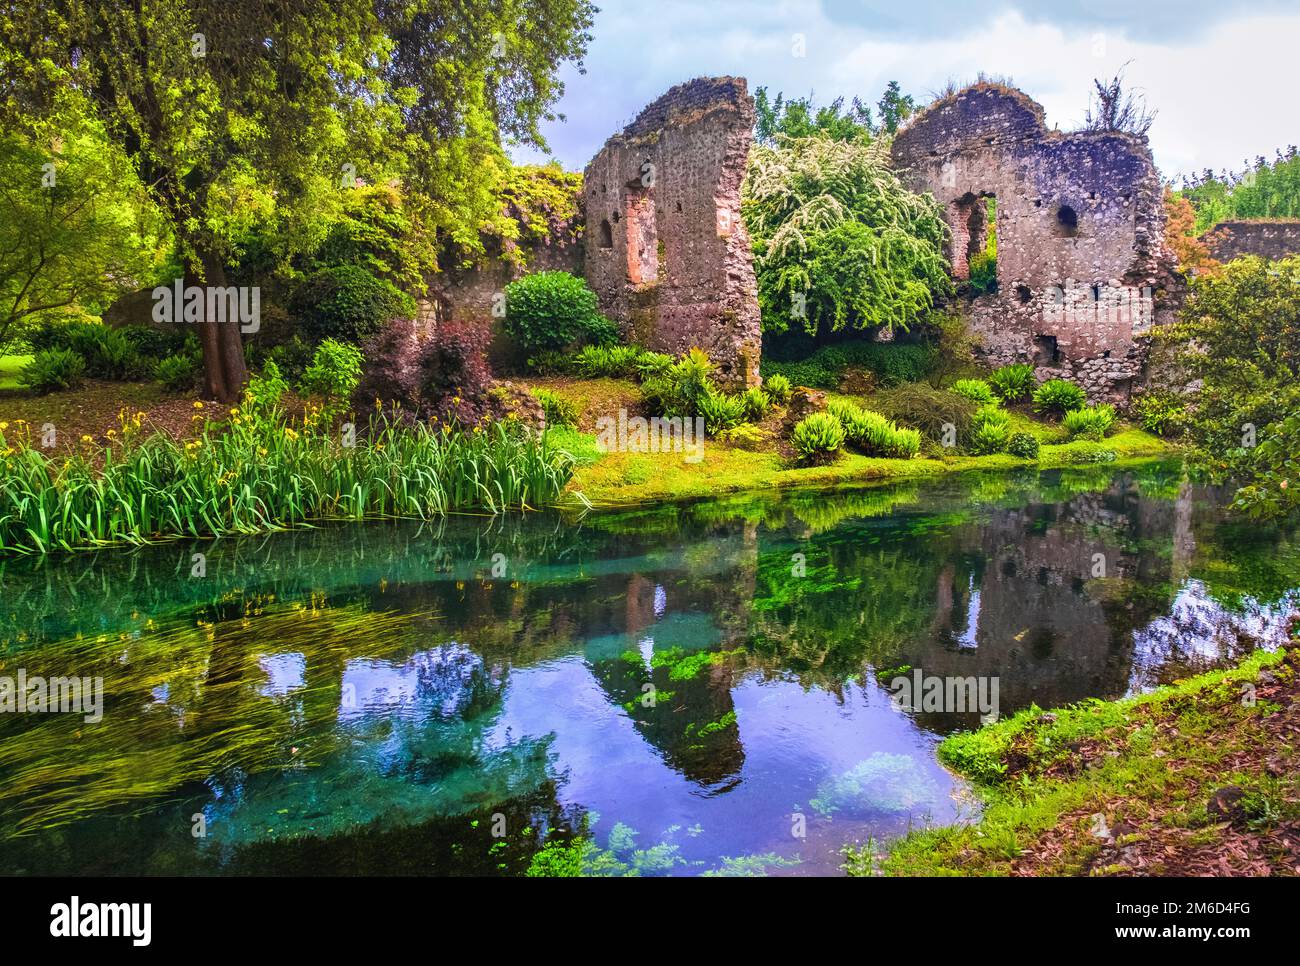 Dream river enchanted castle ruins garden fairy tale nymph garden Stock Photo